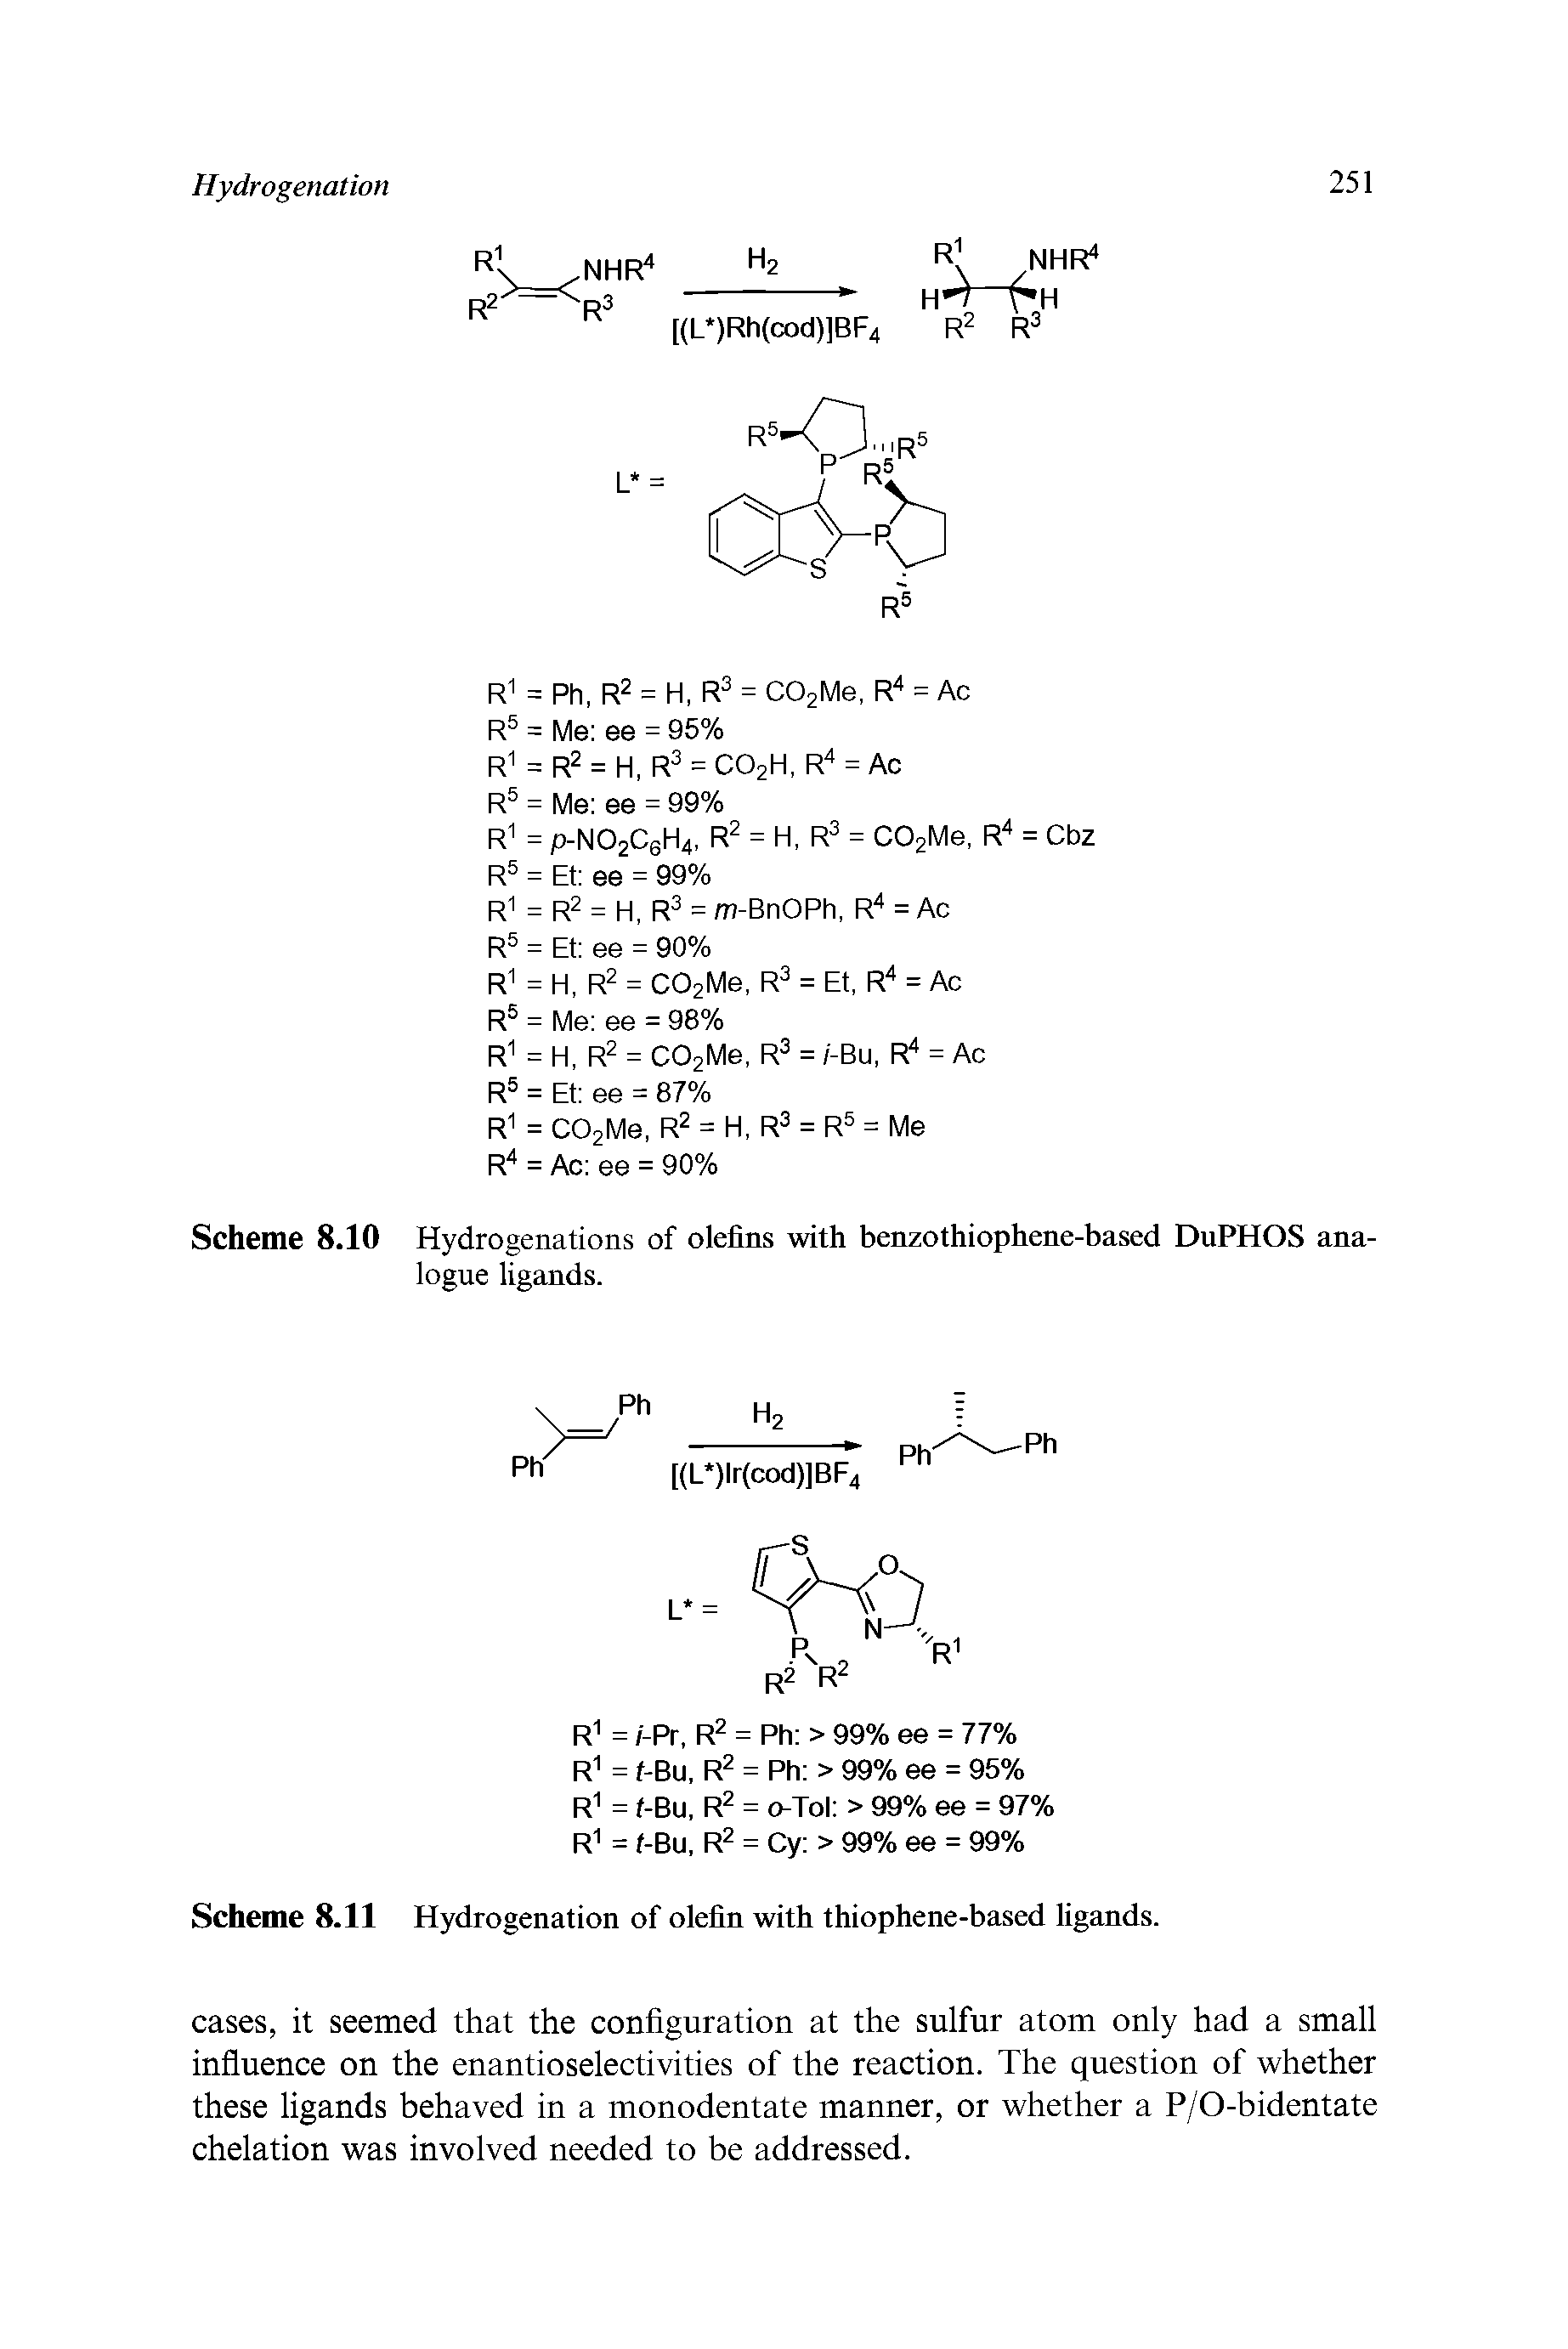 Scheme 8.10 Hydrogenations of olefins with benzothiophene-based DuPHOS analogue ligands.